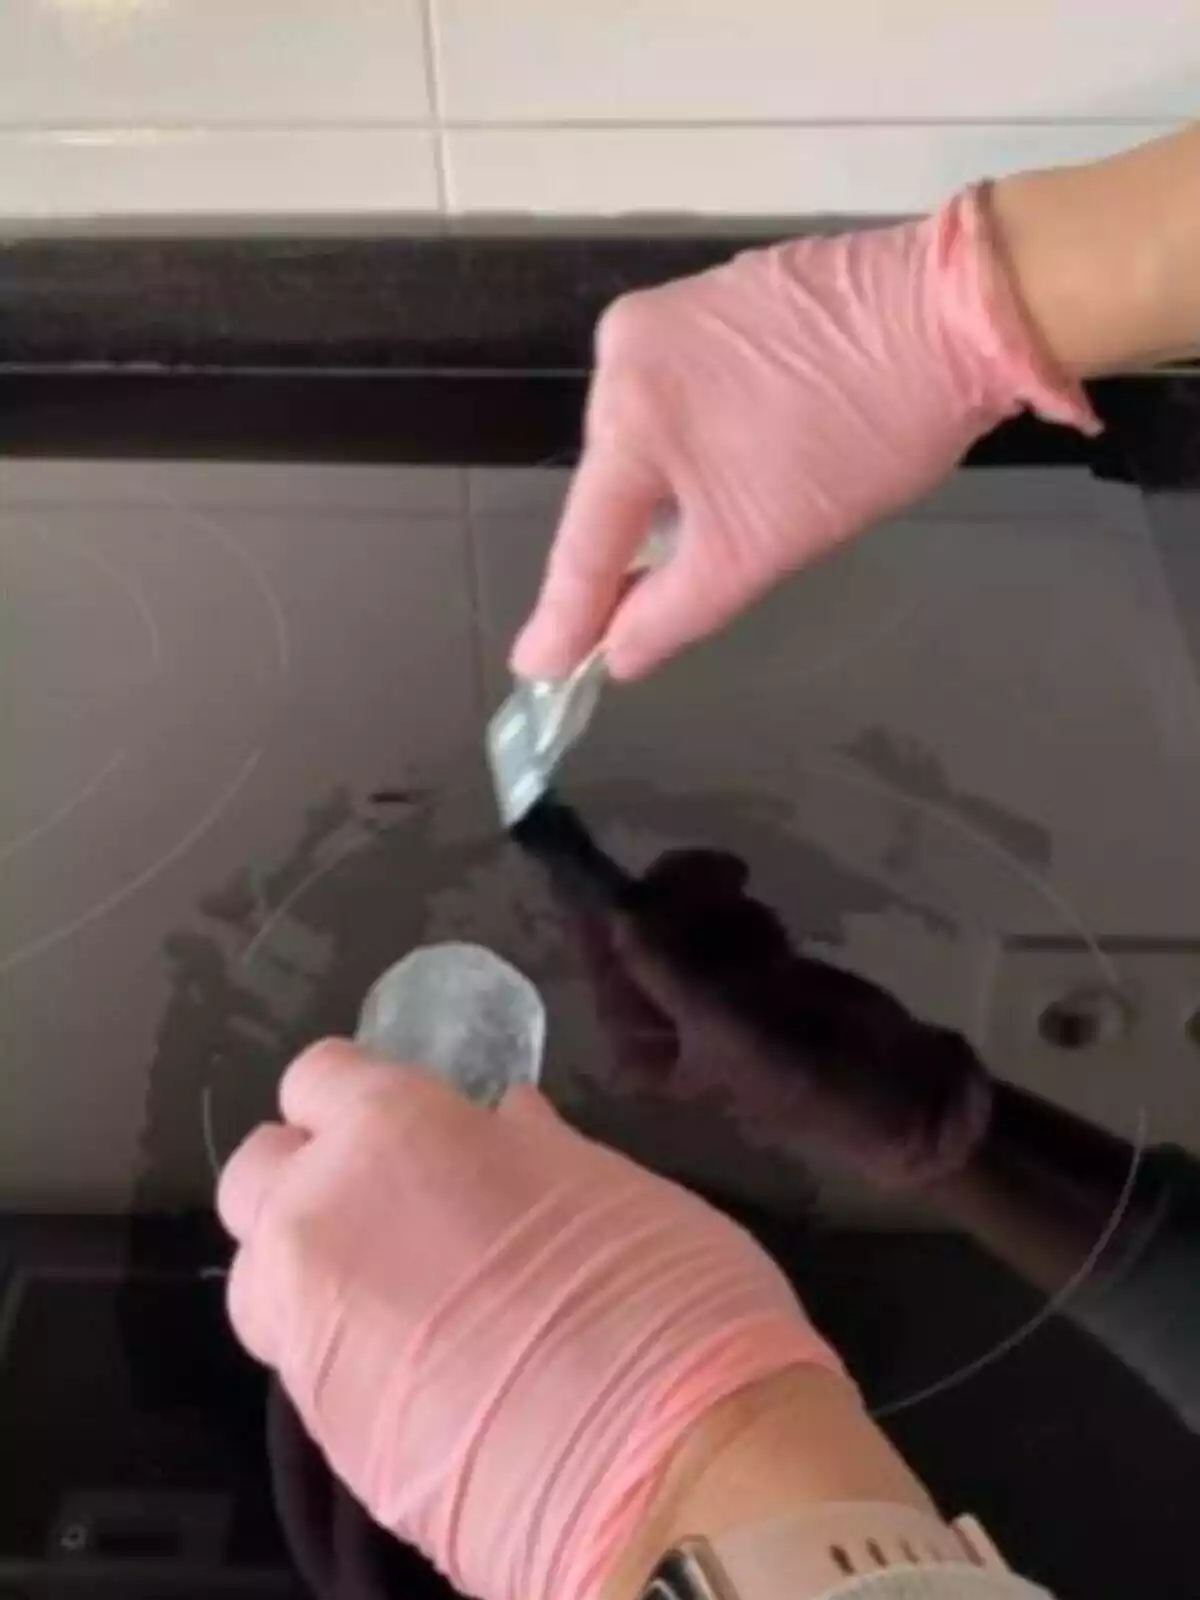 Imagen de las manos de una persona con guantes pasando un hielo por una vitrocerámica y una rascadora